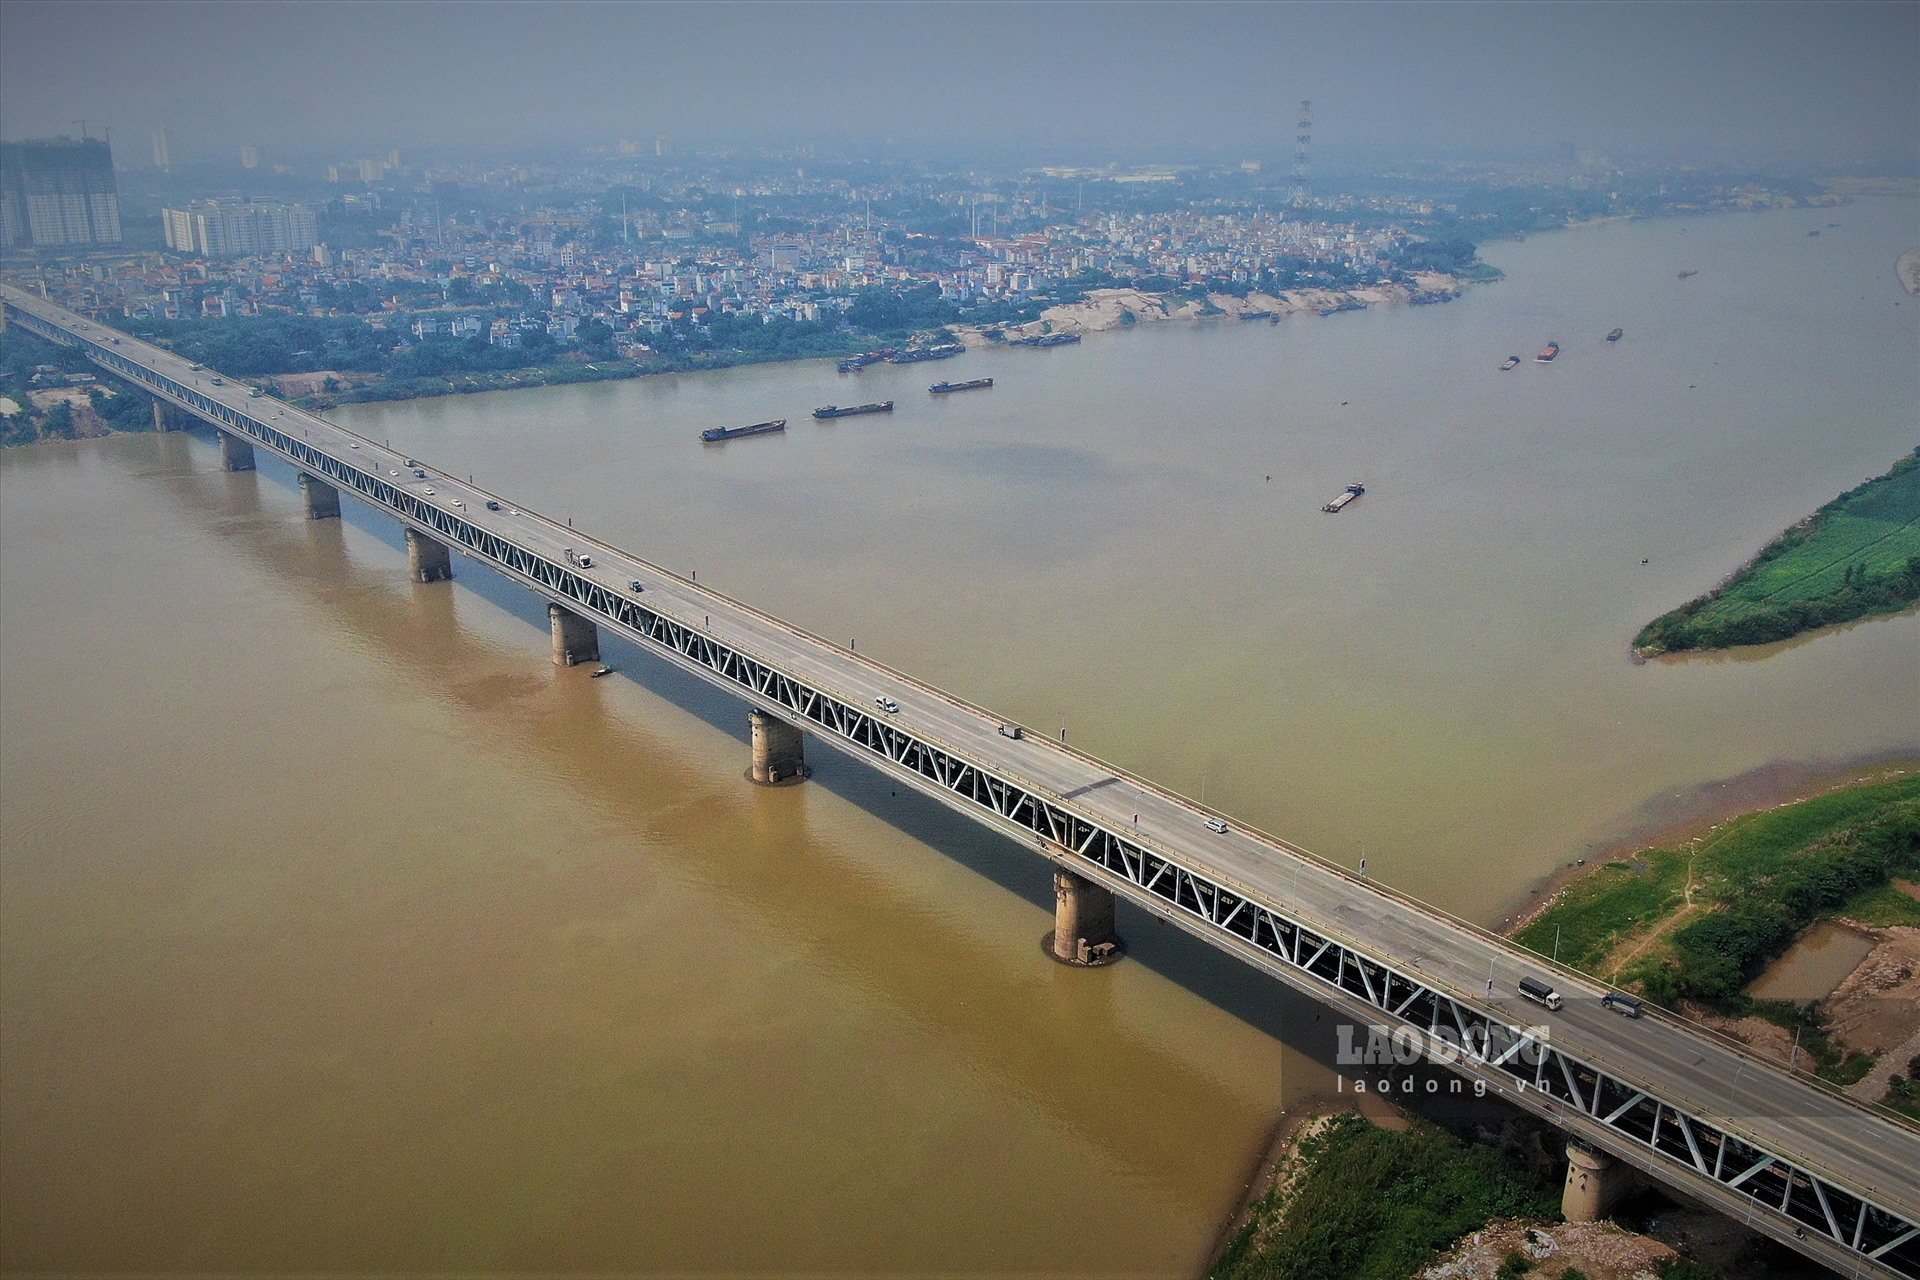 Cầu Thăng Long khánh thành vào năm 1985, tính đến nay vừa tròn 35 năm khai thác sử dụng và lần đầu tiên tiến hành sửa chữa mặt cầu vào năm 2009.